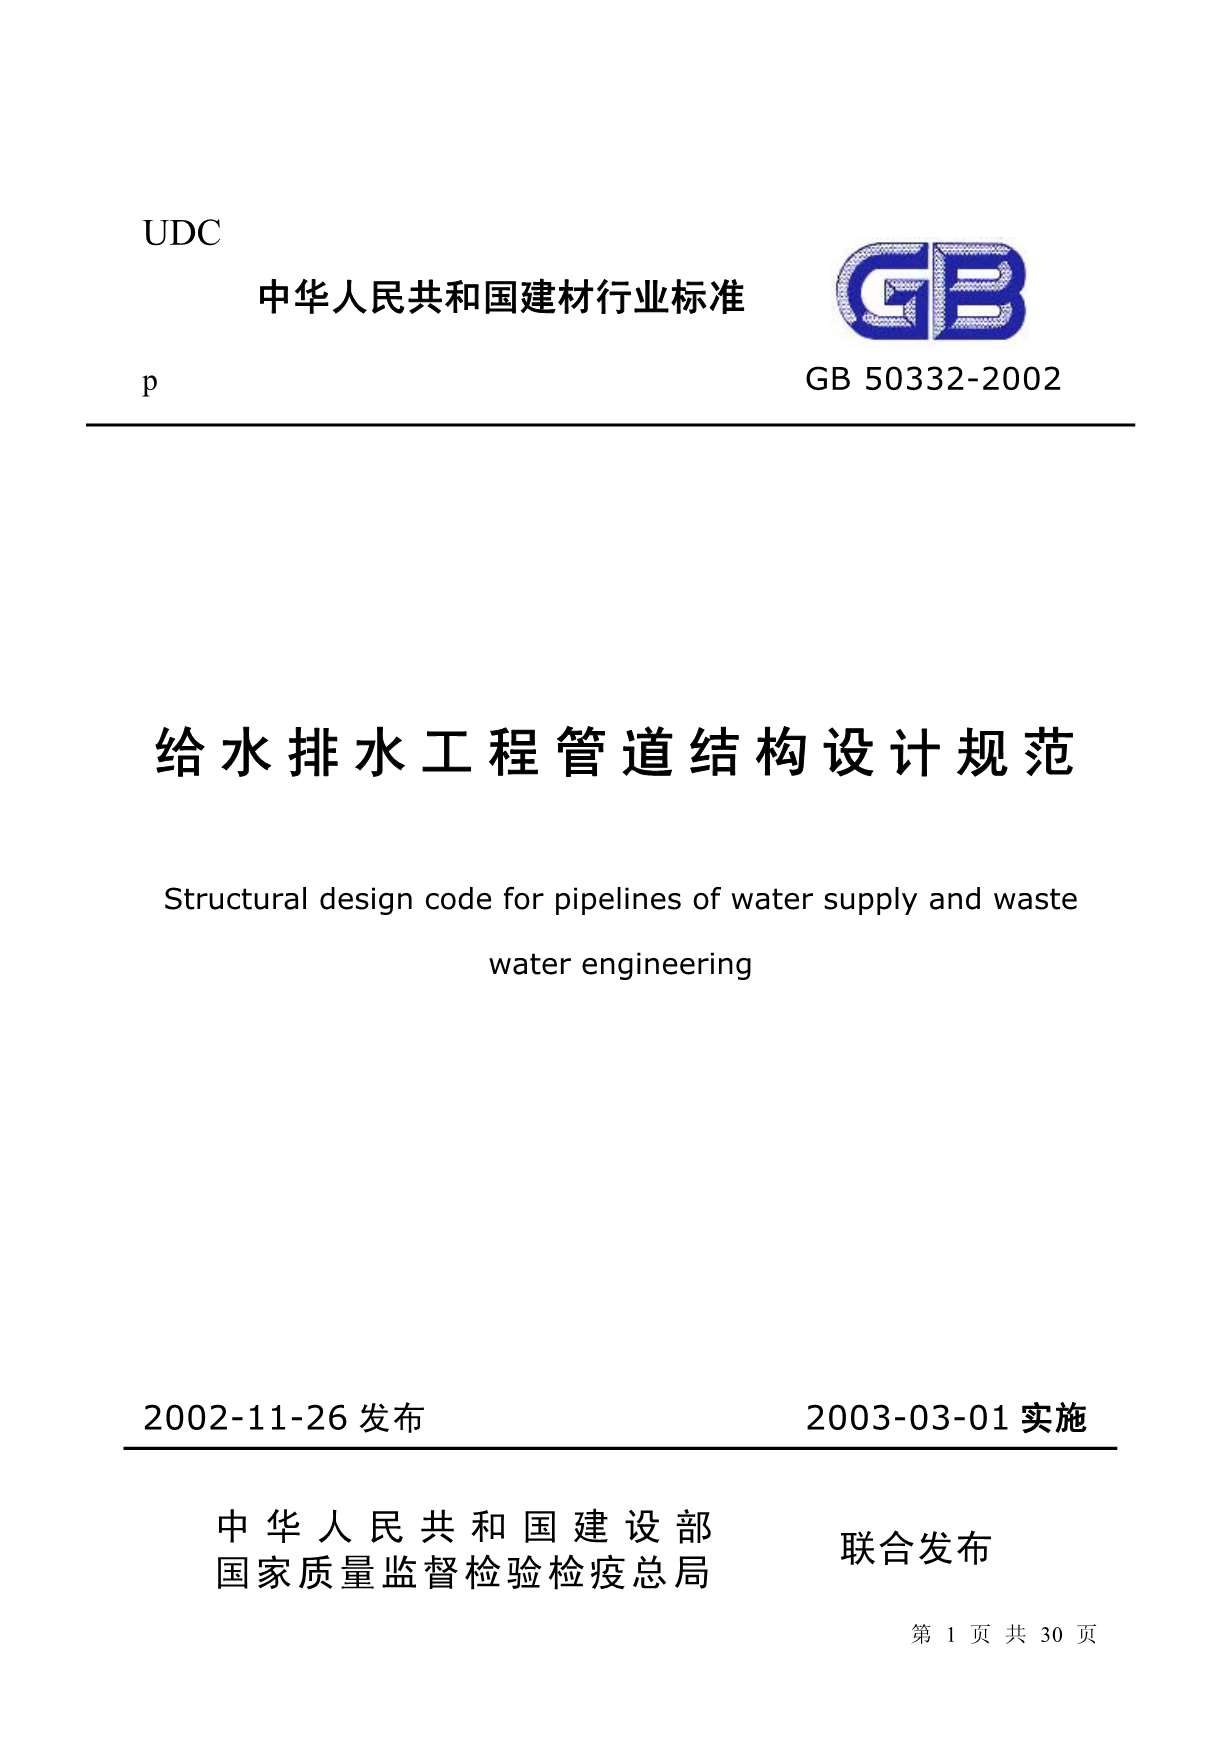 GB50332-2002给水排水工程管道结构设计规范